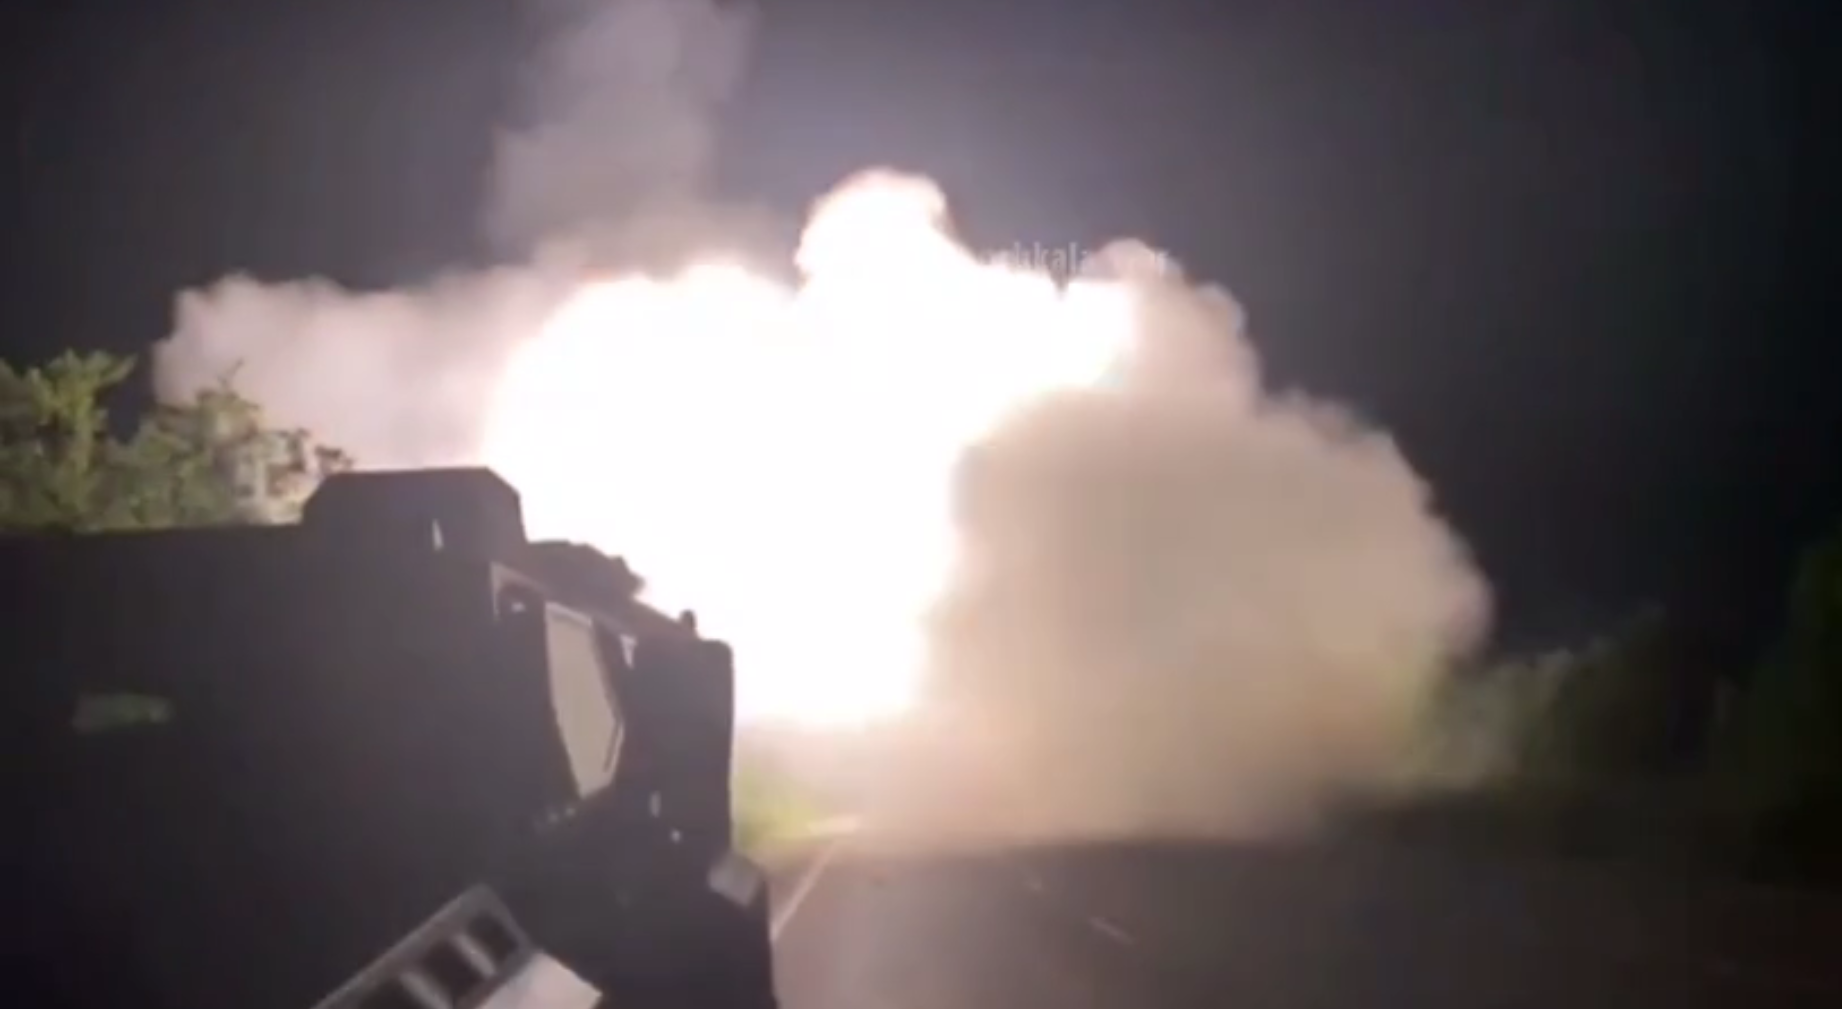 Video aufgetaucht, in dem US HIMARS MLRS 12 Raketen auf russische Armeestellungen abfeuert